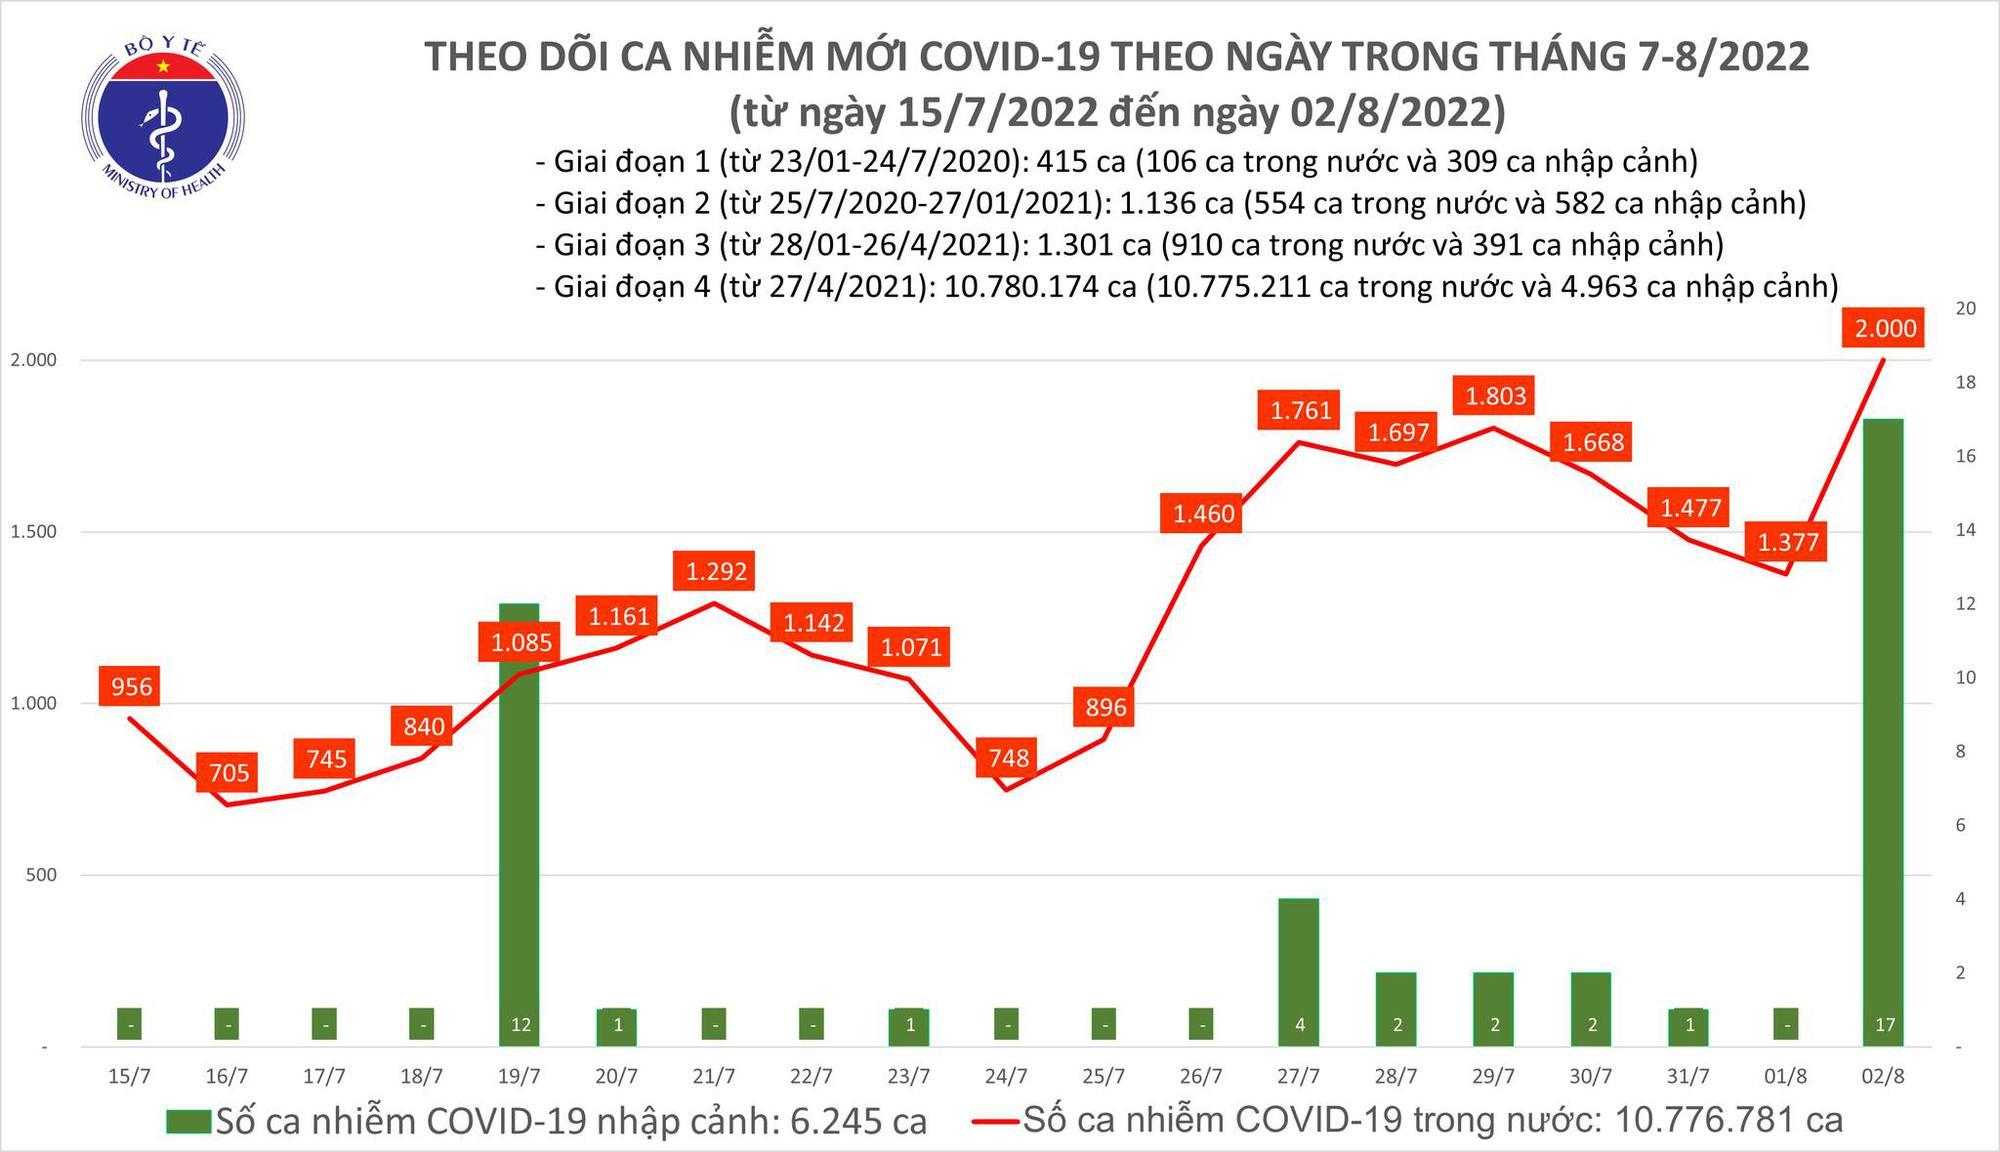 Ngày 2/8: Ca COVID-19 tăng vọt lên 2.000, cao nhất trong hơn 2 tháng nay; có 1 F0 tử vong - Ảnh 1.